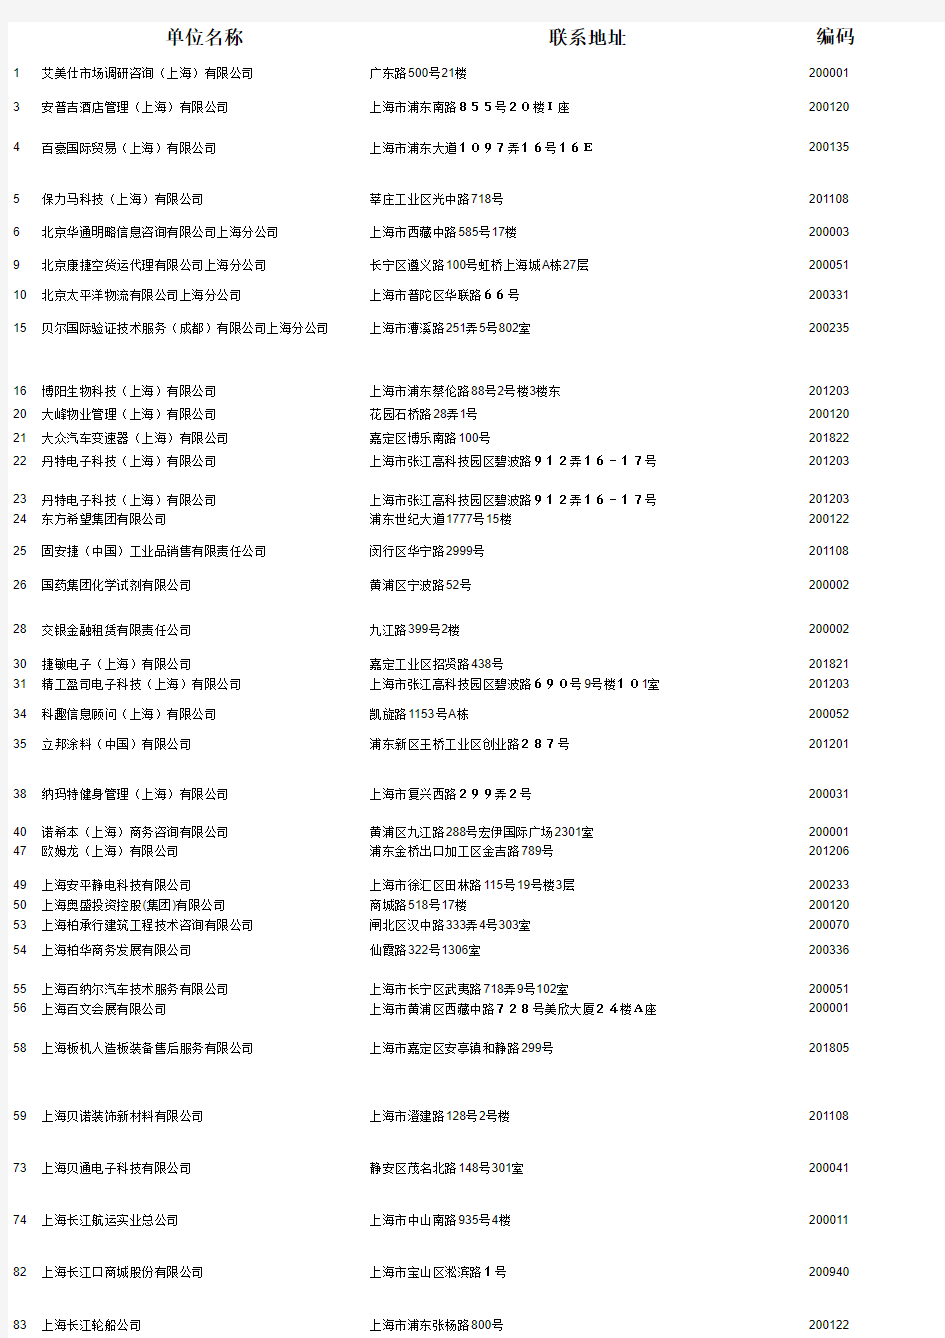 上海名企人力资源HR名录190位